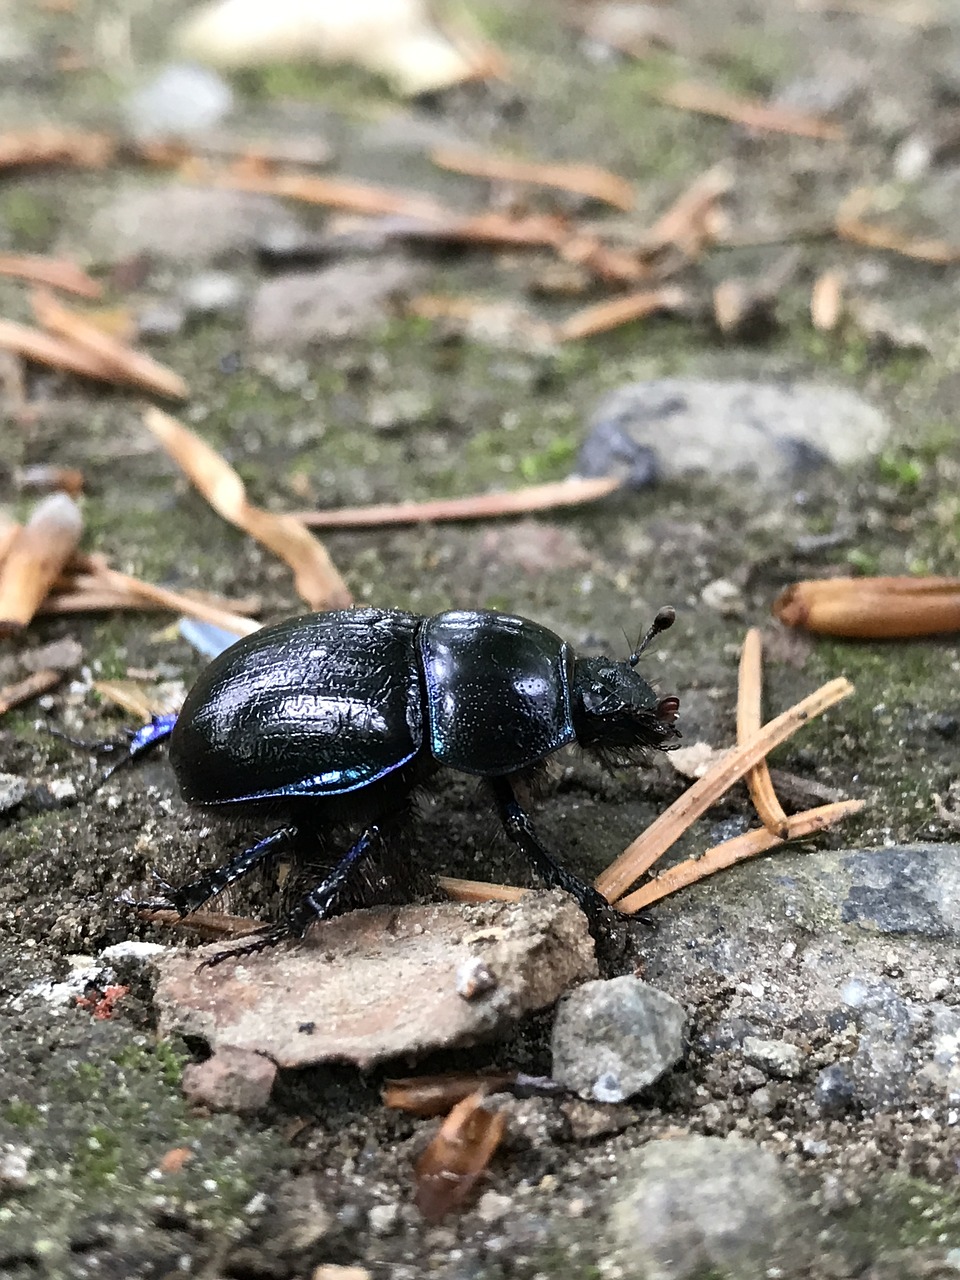 Image - beetle nature ground krabbeltier